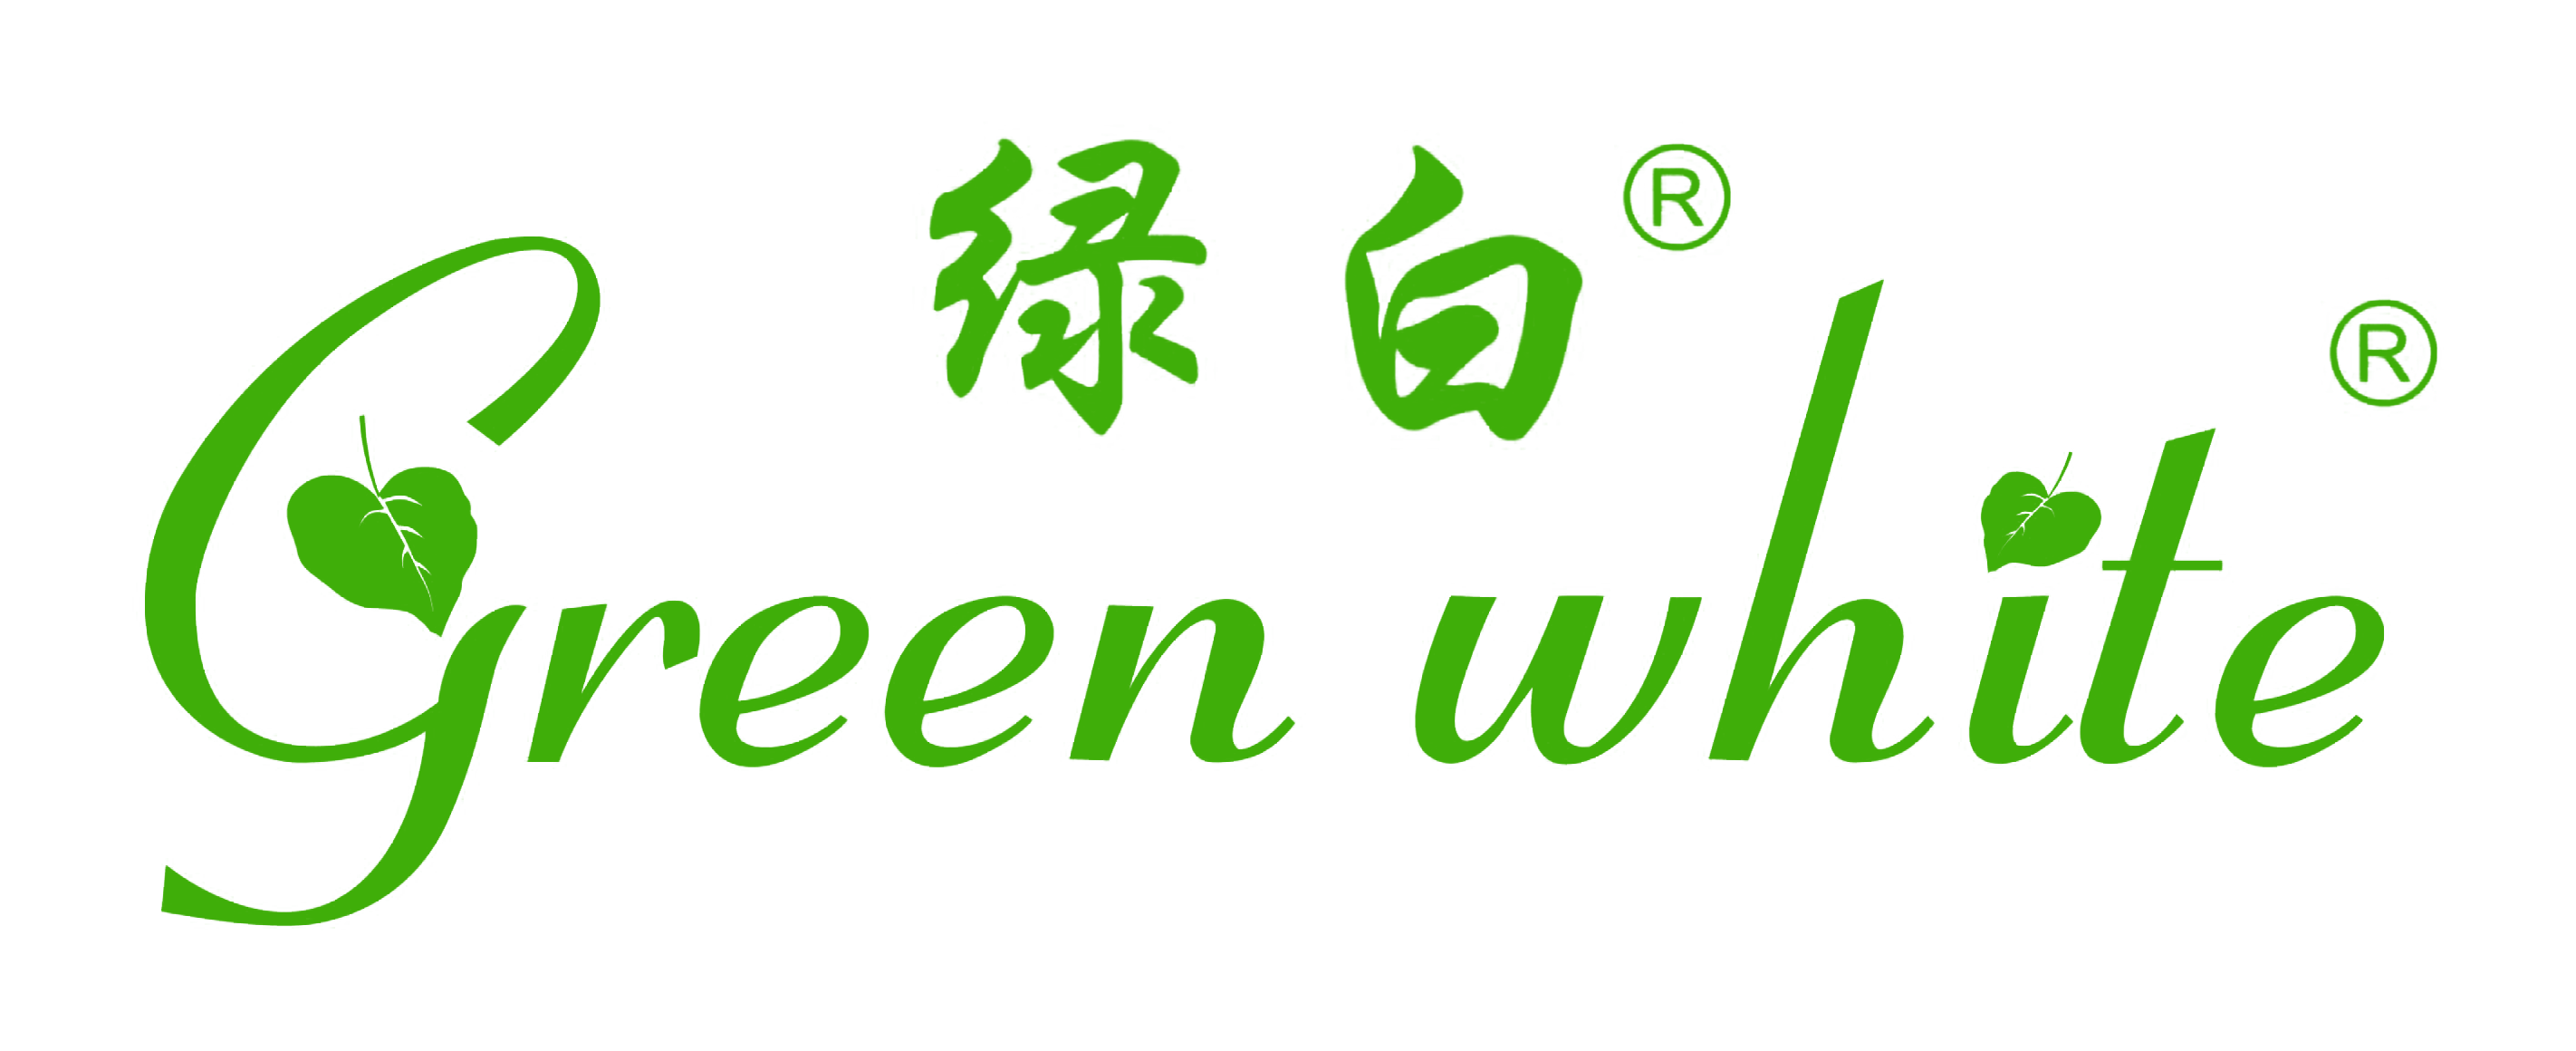 绿白GW-J60-3工业走心机智能式静电油雾回收分离过滤器烟雾油雾收集净化器